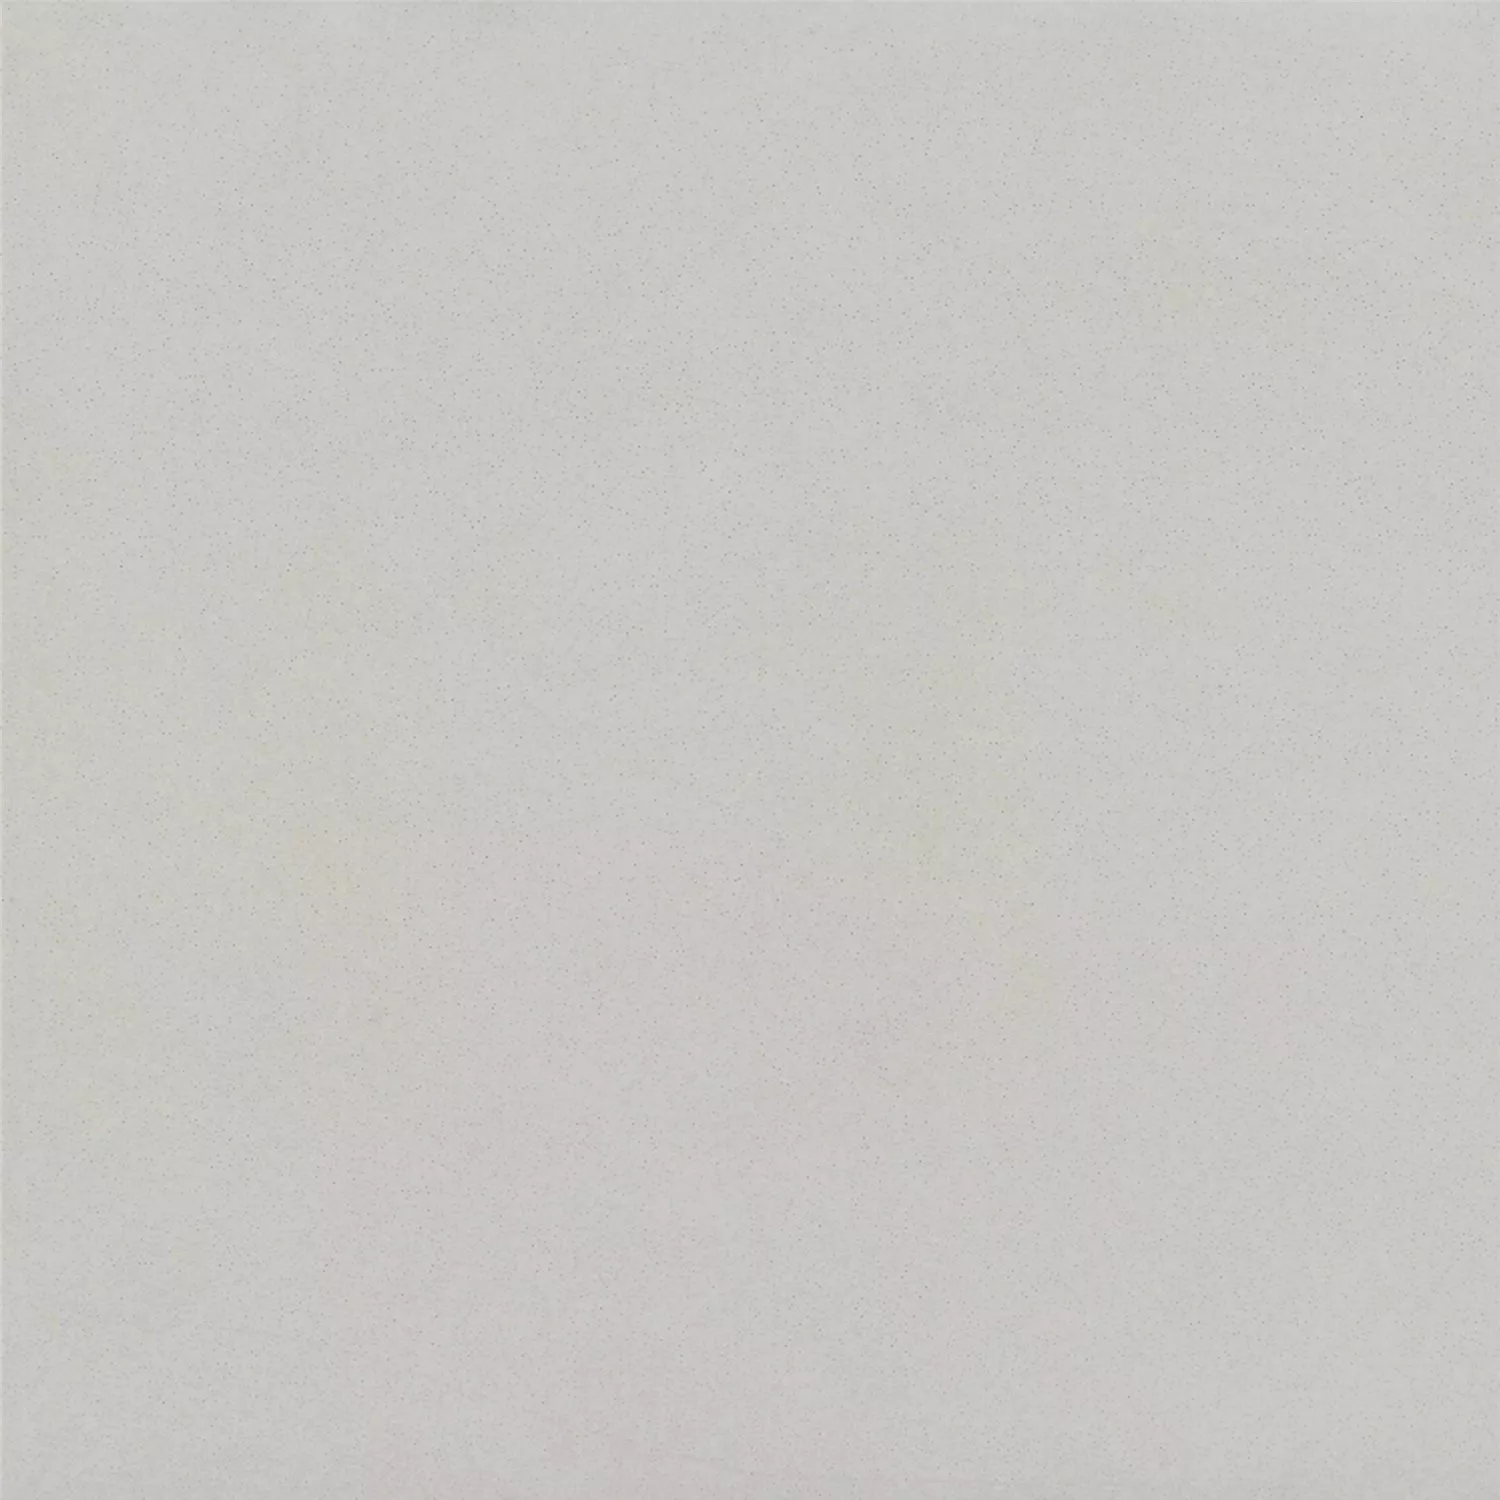 Πρότυπο Όψη Πλακιδίων Tσιμέντου Gotik Πλακάκι Bάσης Ασπρο 22,3x22,3cm